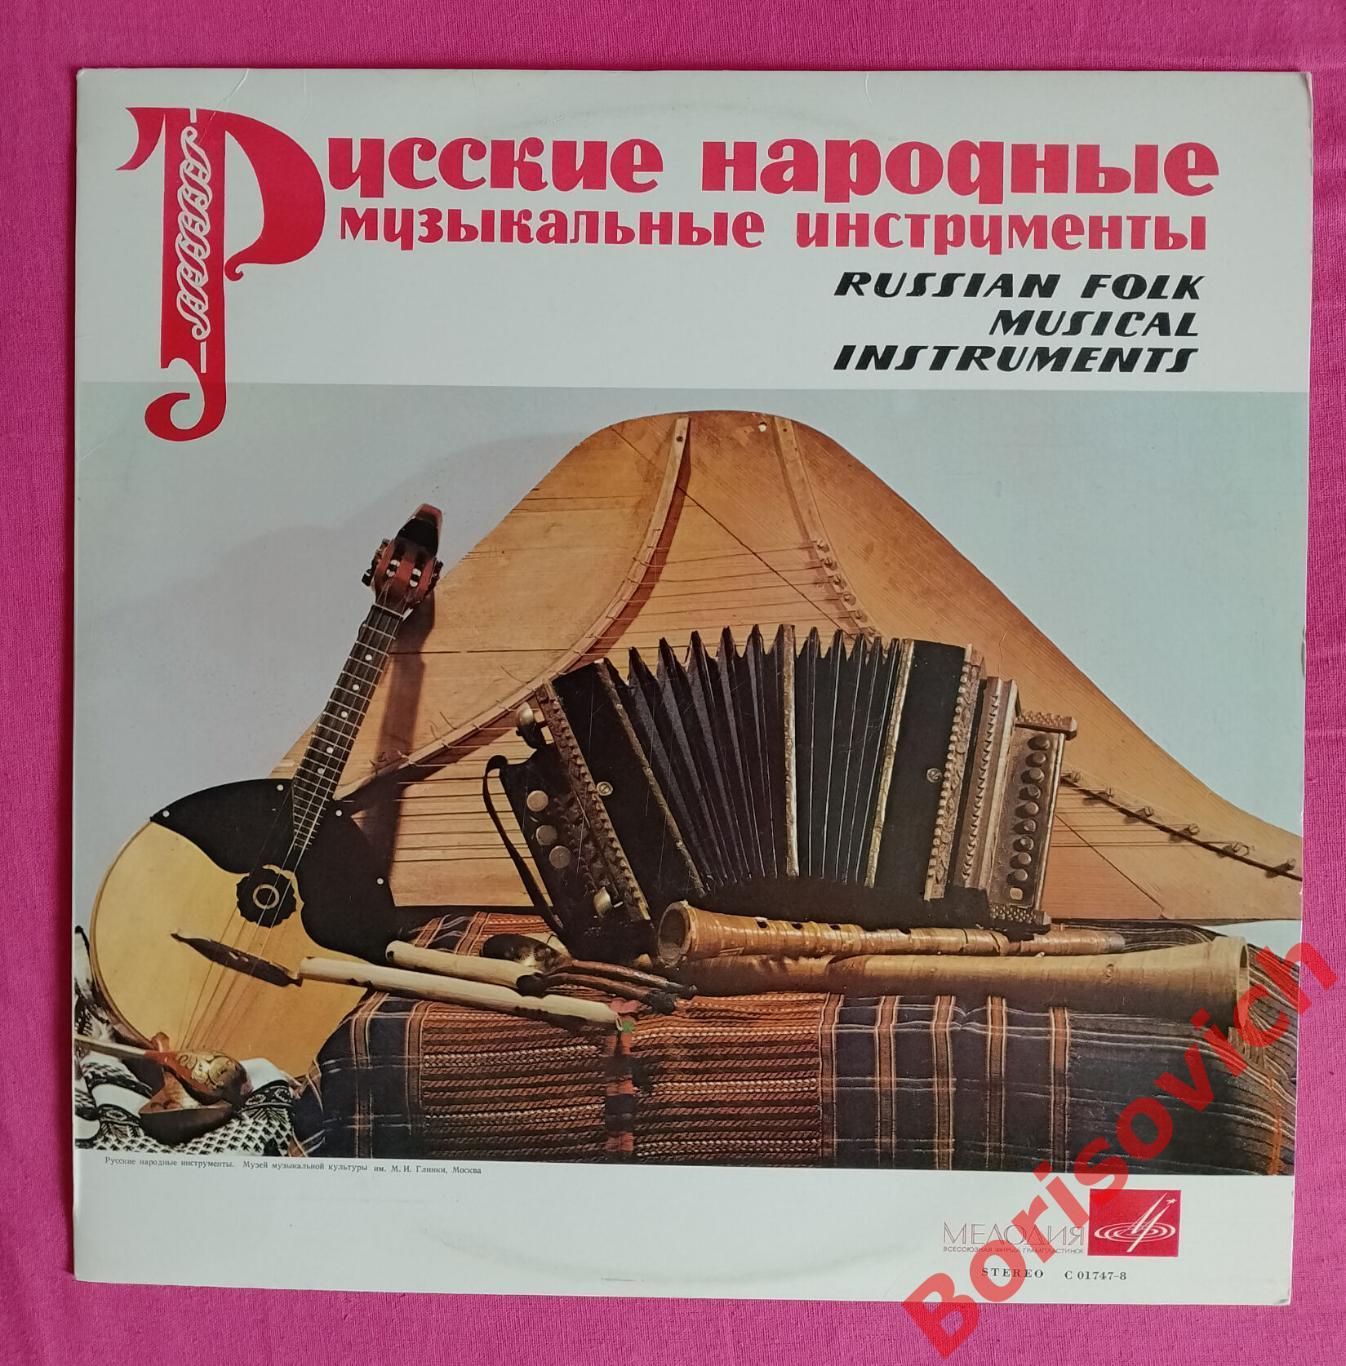 РУССКИЕ НАРОДНЫЕ МУЗЫКАЛЬНЫЕ ИНСТРУМЕНТЫ RUSSIAN FOLK MUSICAL INSTRUMENTS